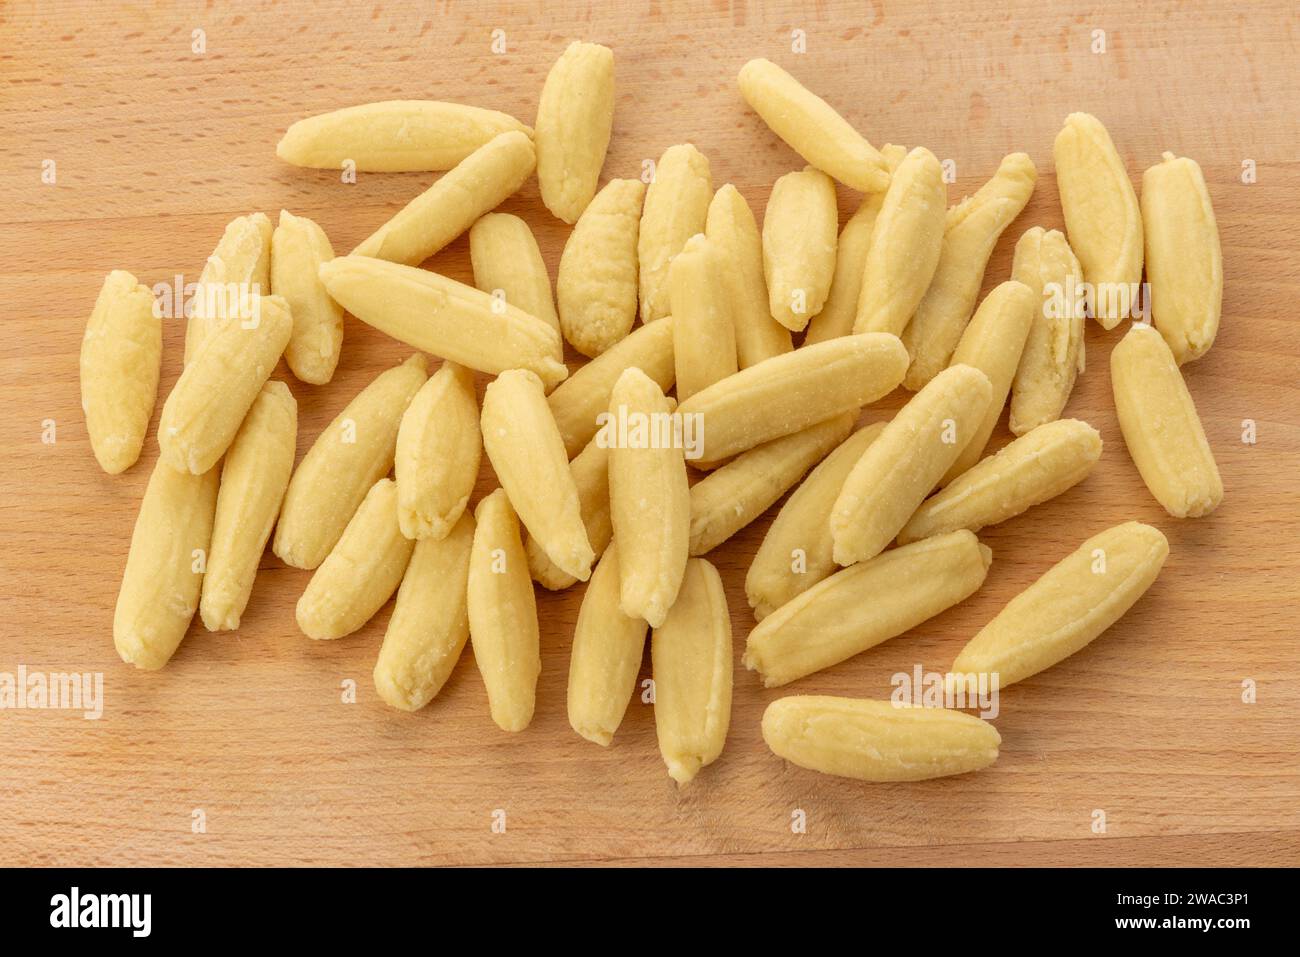 Ravioles de Melle gnocchis typiques de Val Varaita, Piémont, Italie à base de pommes de terre, farine et fromage. Gnocchi brut sur une planche à découper en bois Banque D'Images